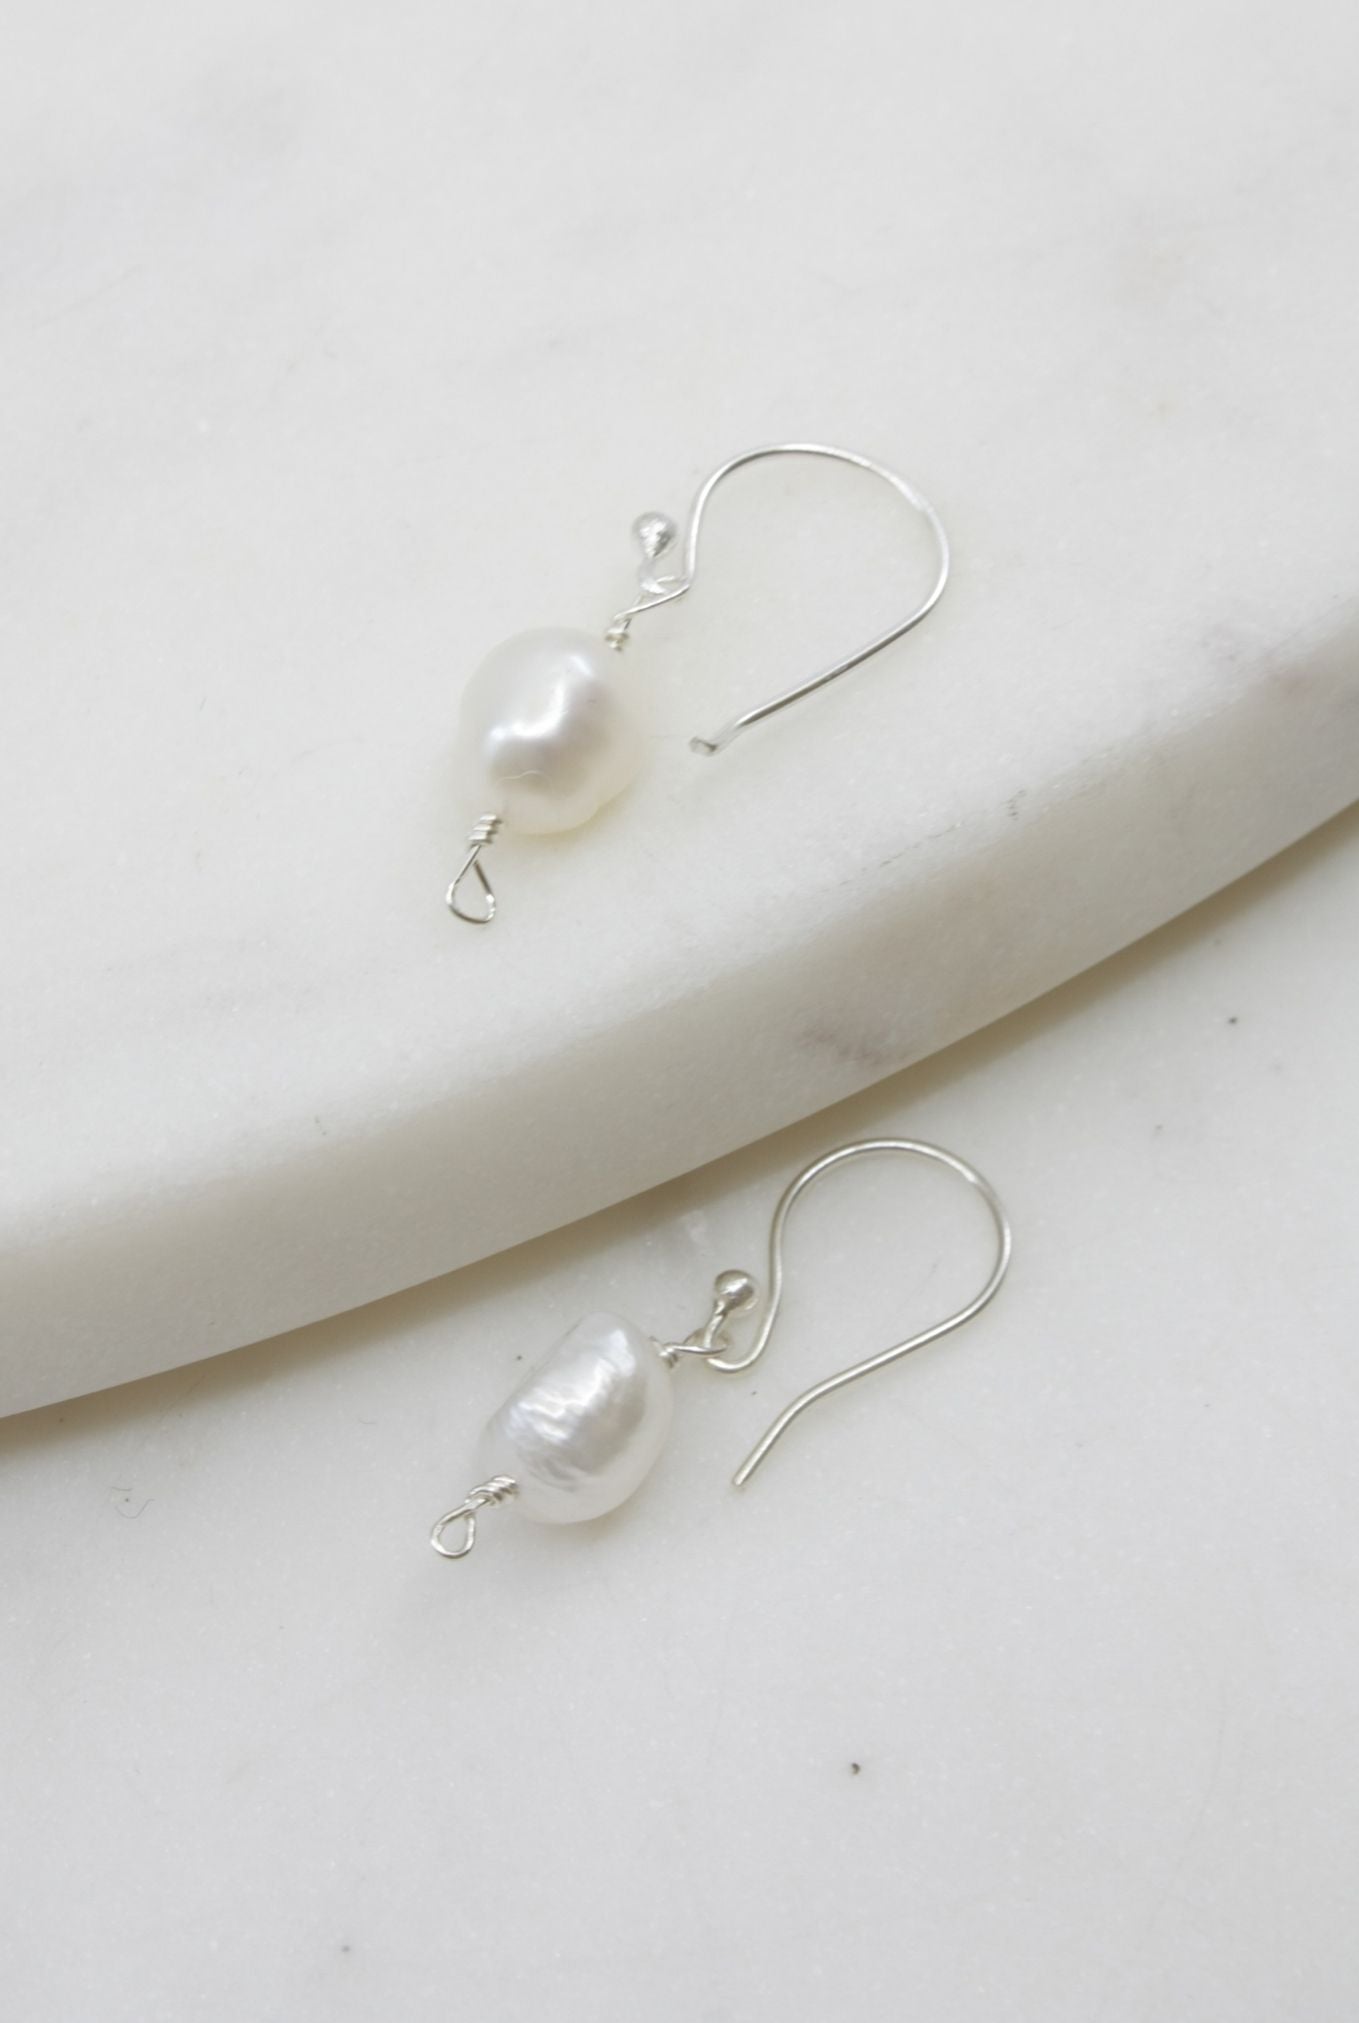 Wire Wrapped Drop Pearl Earrings